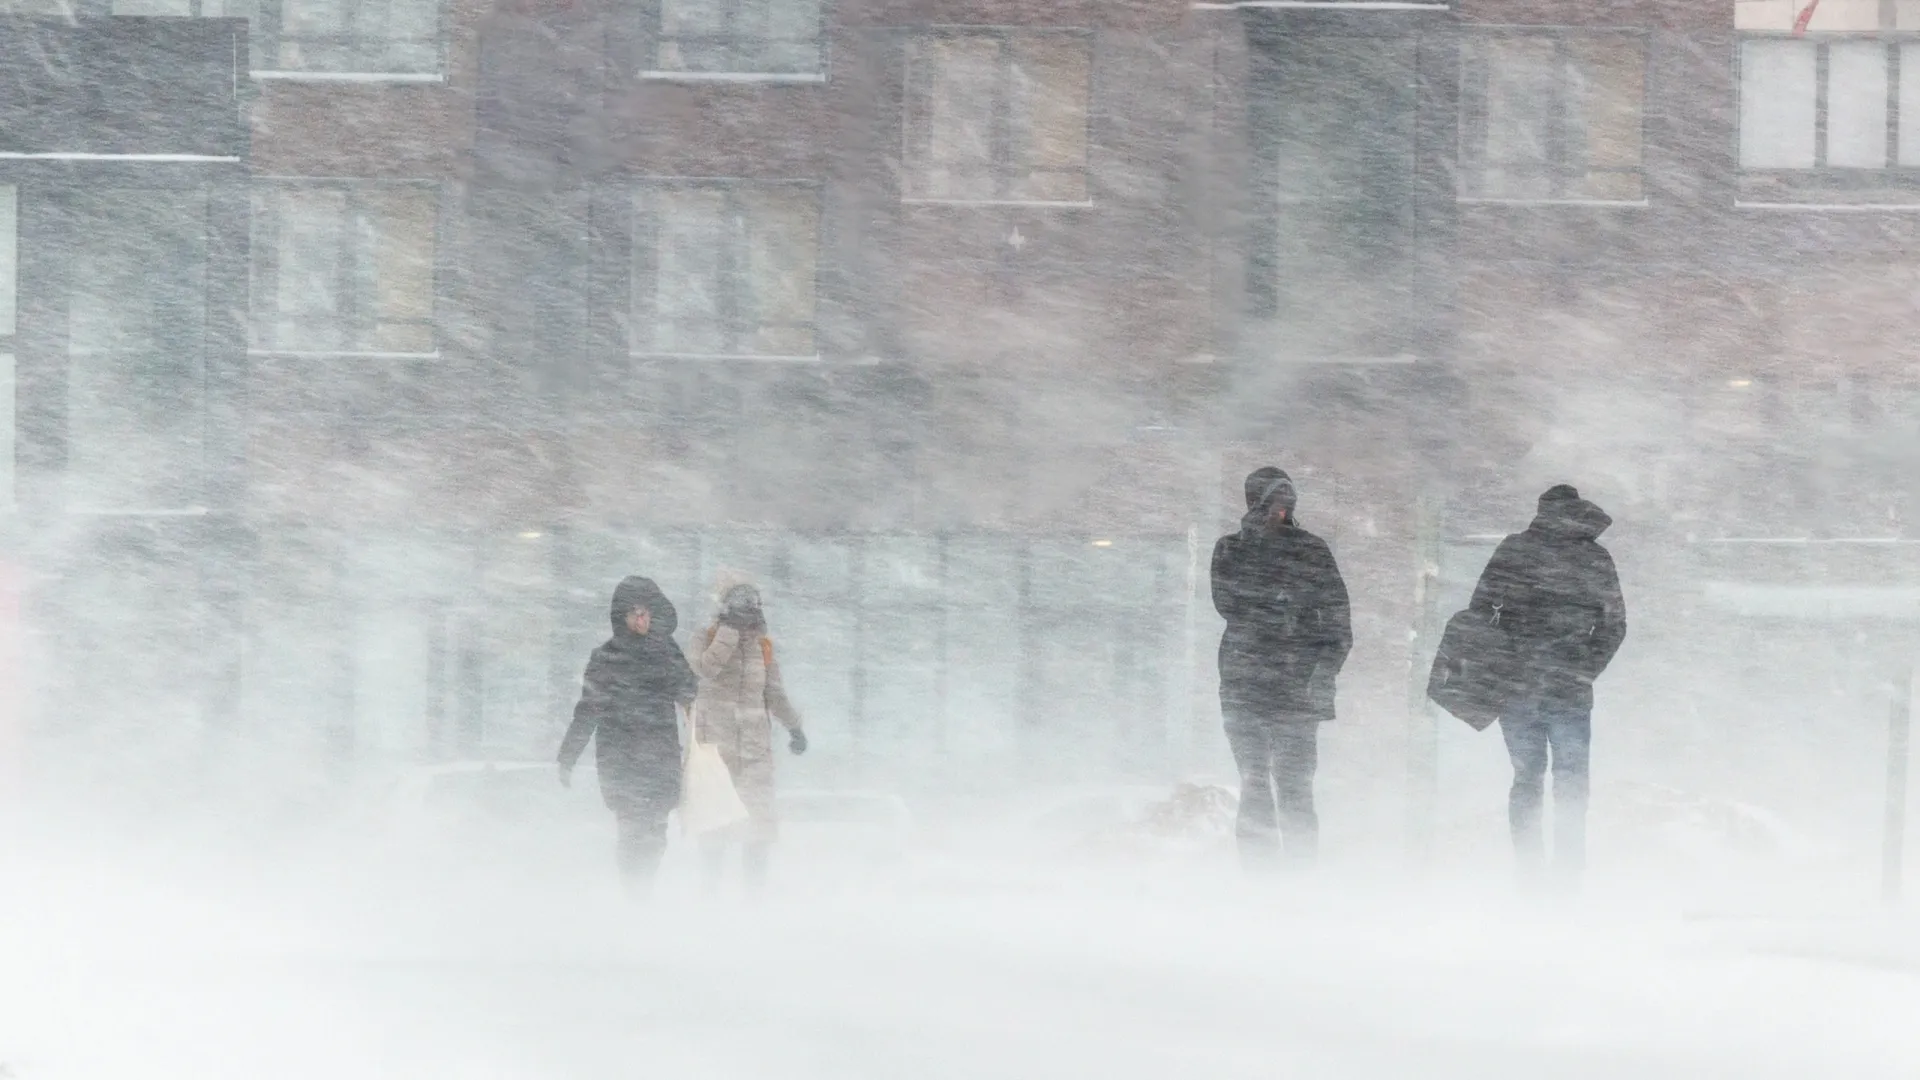 Жителей ЯНАО призвали быть осторожными в неблагоприятную погоду. Фото: justkgoomm/Shutterstock/Fotodom